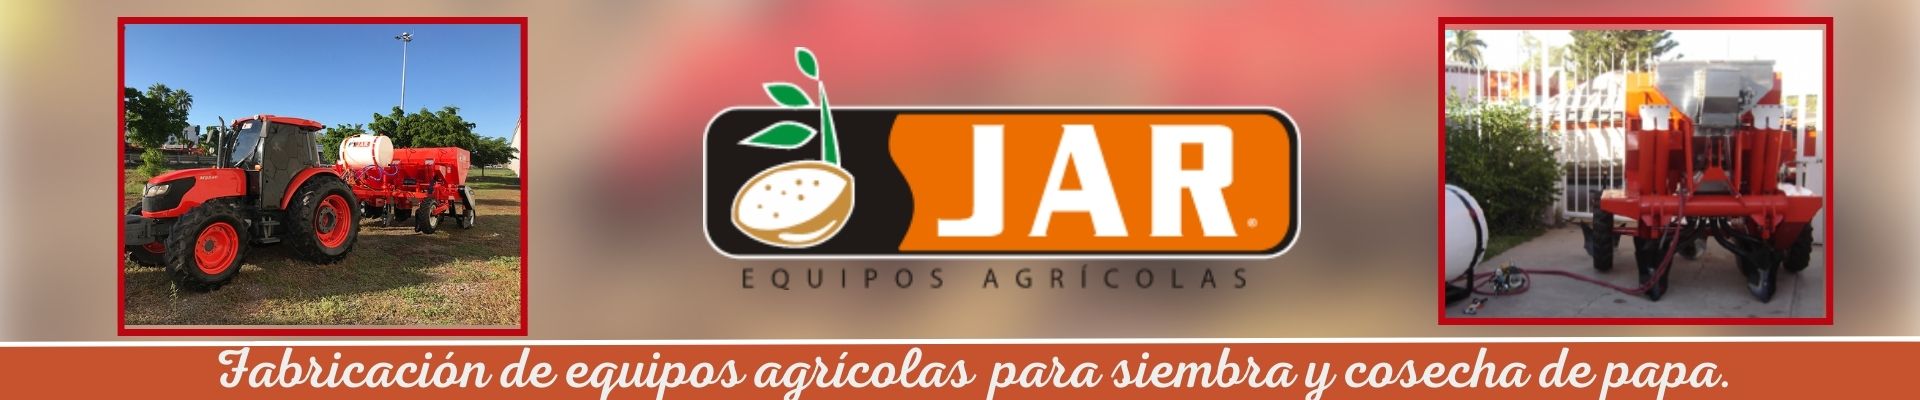 Banner EQUIPOS AGRICOLAS JAR